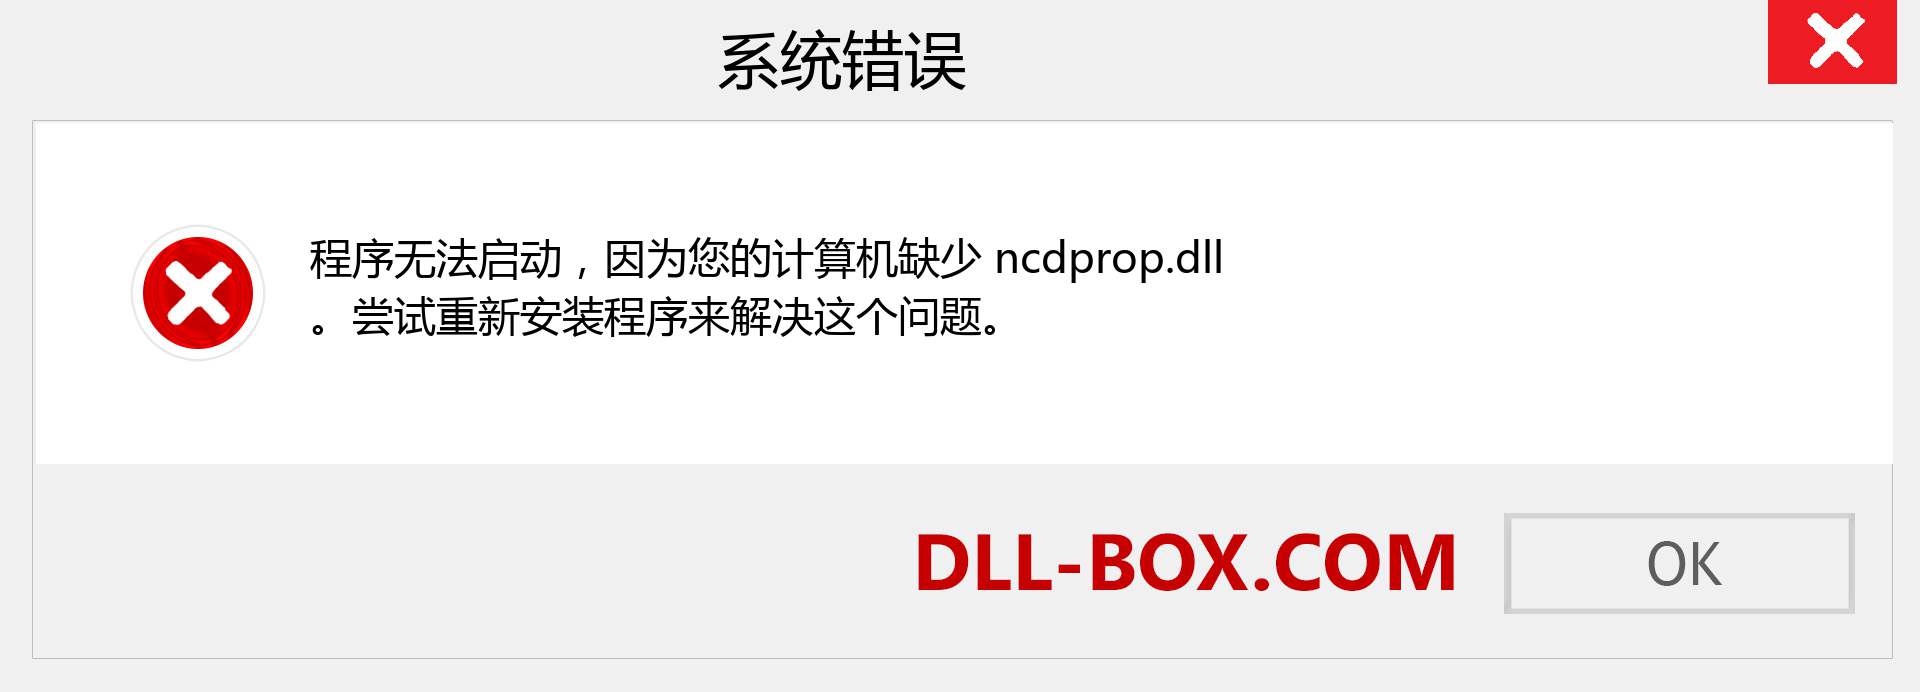 ncdprop.dll 文件丢失？。 适用于 Windows 7、8、10 的下载 - 修复 Windows、照片、图像上的 ncdprop dll 丢失错误